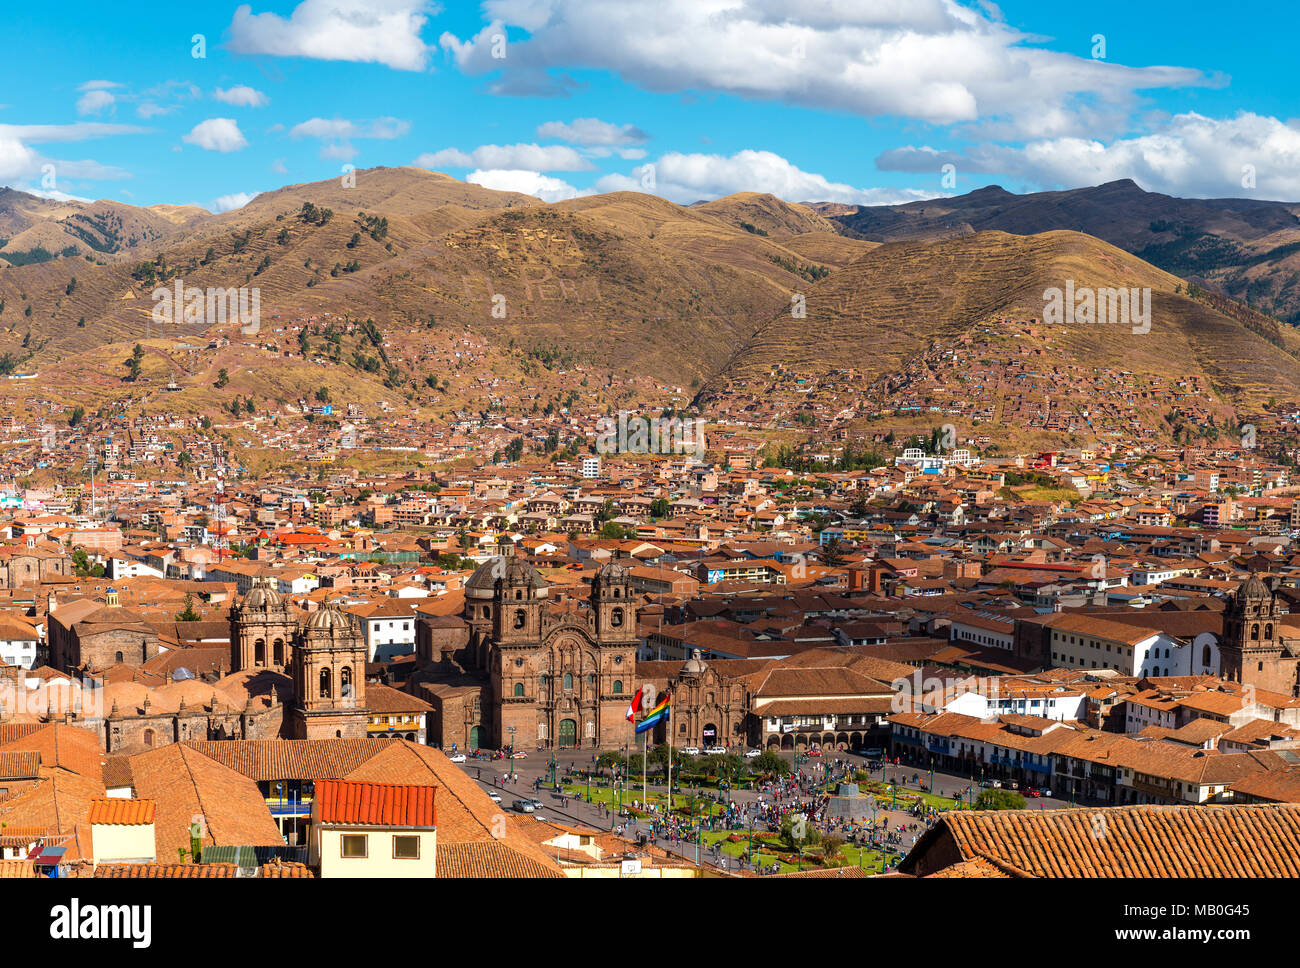 Le paysage urbain de la ville pendant la journée avec la Plaza de Armas et de la cathédrale et de la cordillère des Andes à l'arrière-plan, le Pérou. Banque D'Images